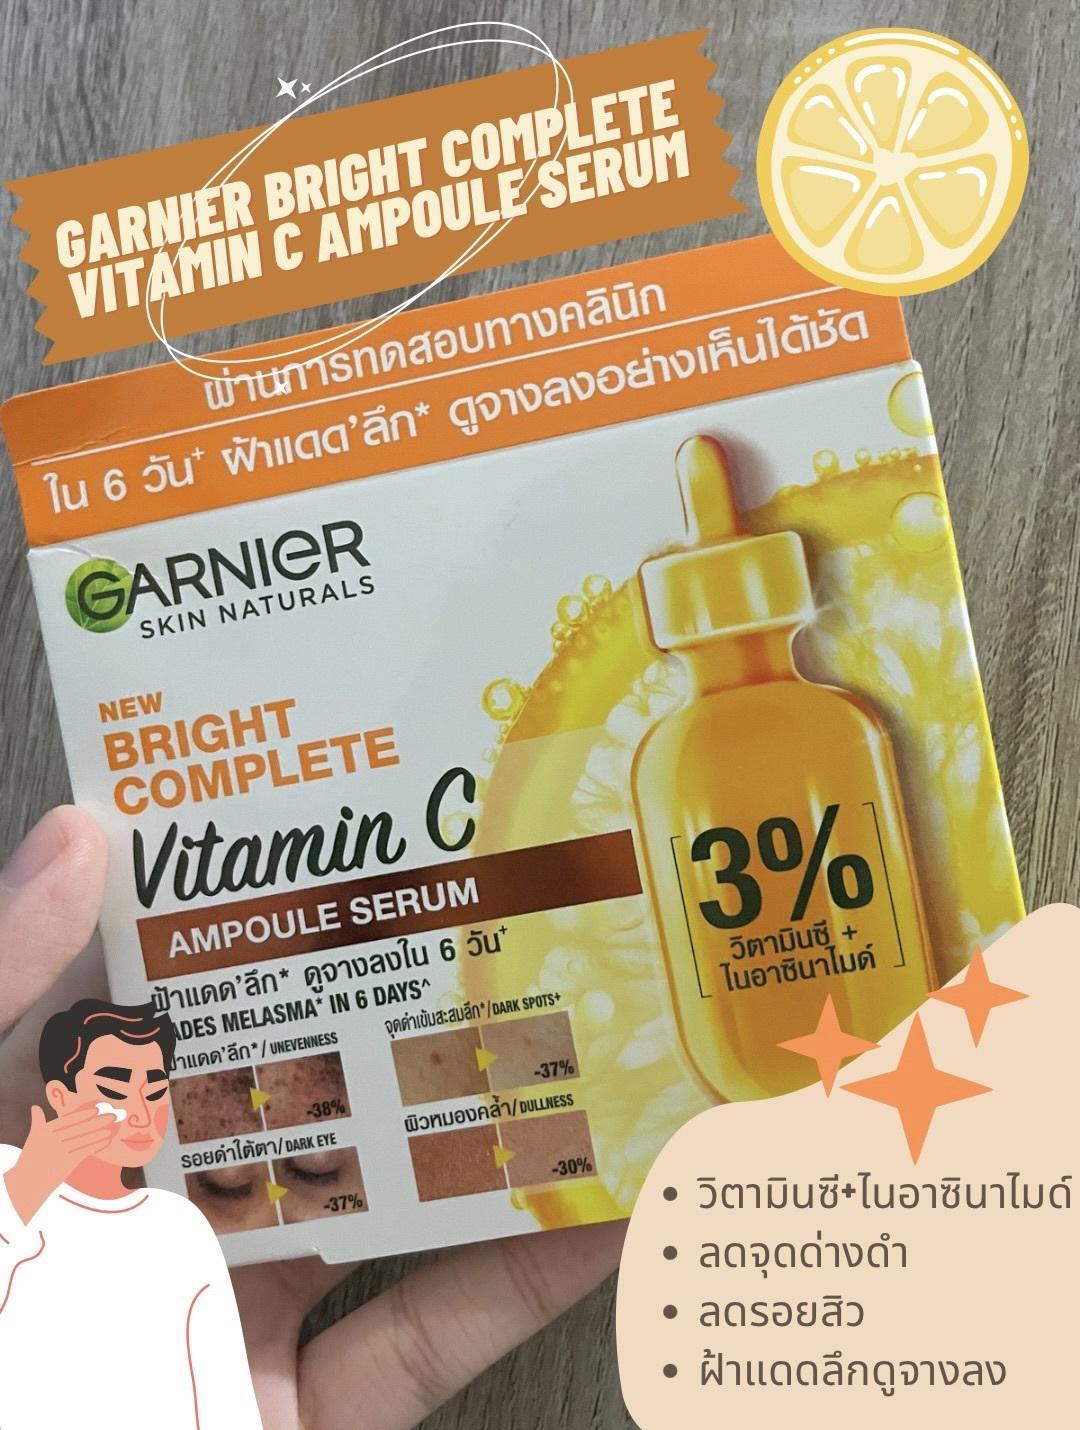 ภาพหน้าปก รีวิว Garnier Bright Complete Vitamin C Ampoule Serum ฉบับจัดเต็ม ที่:0